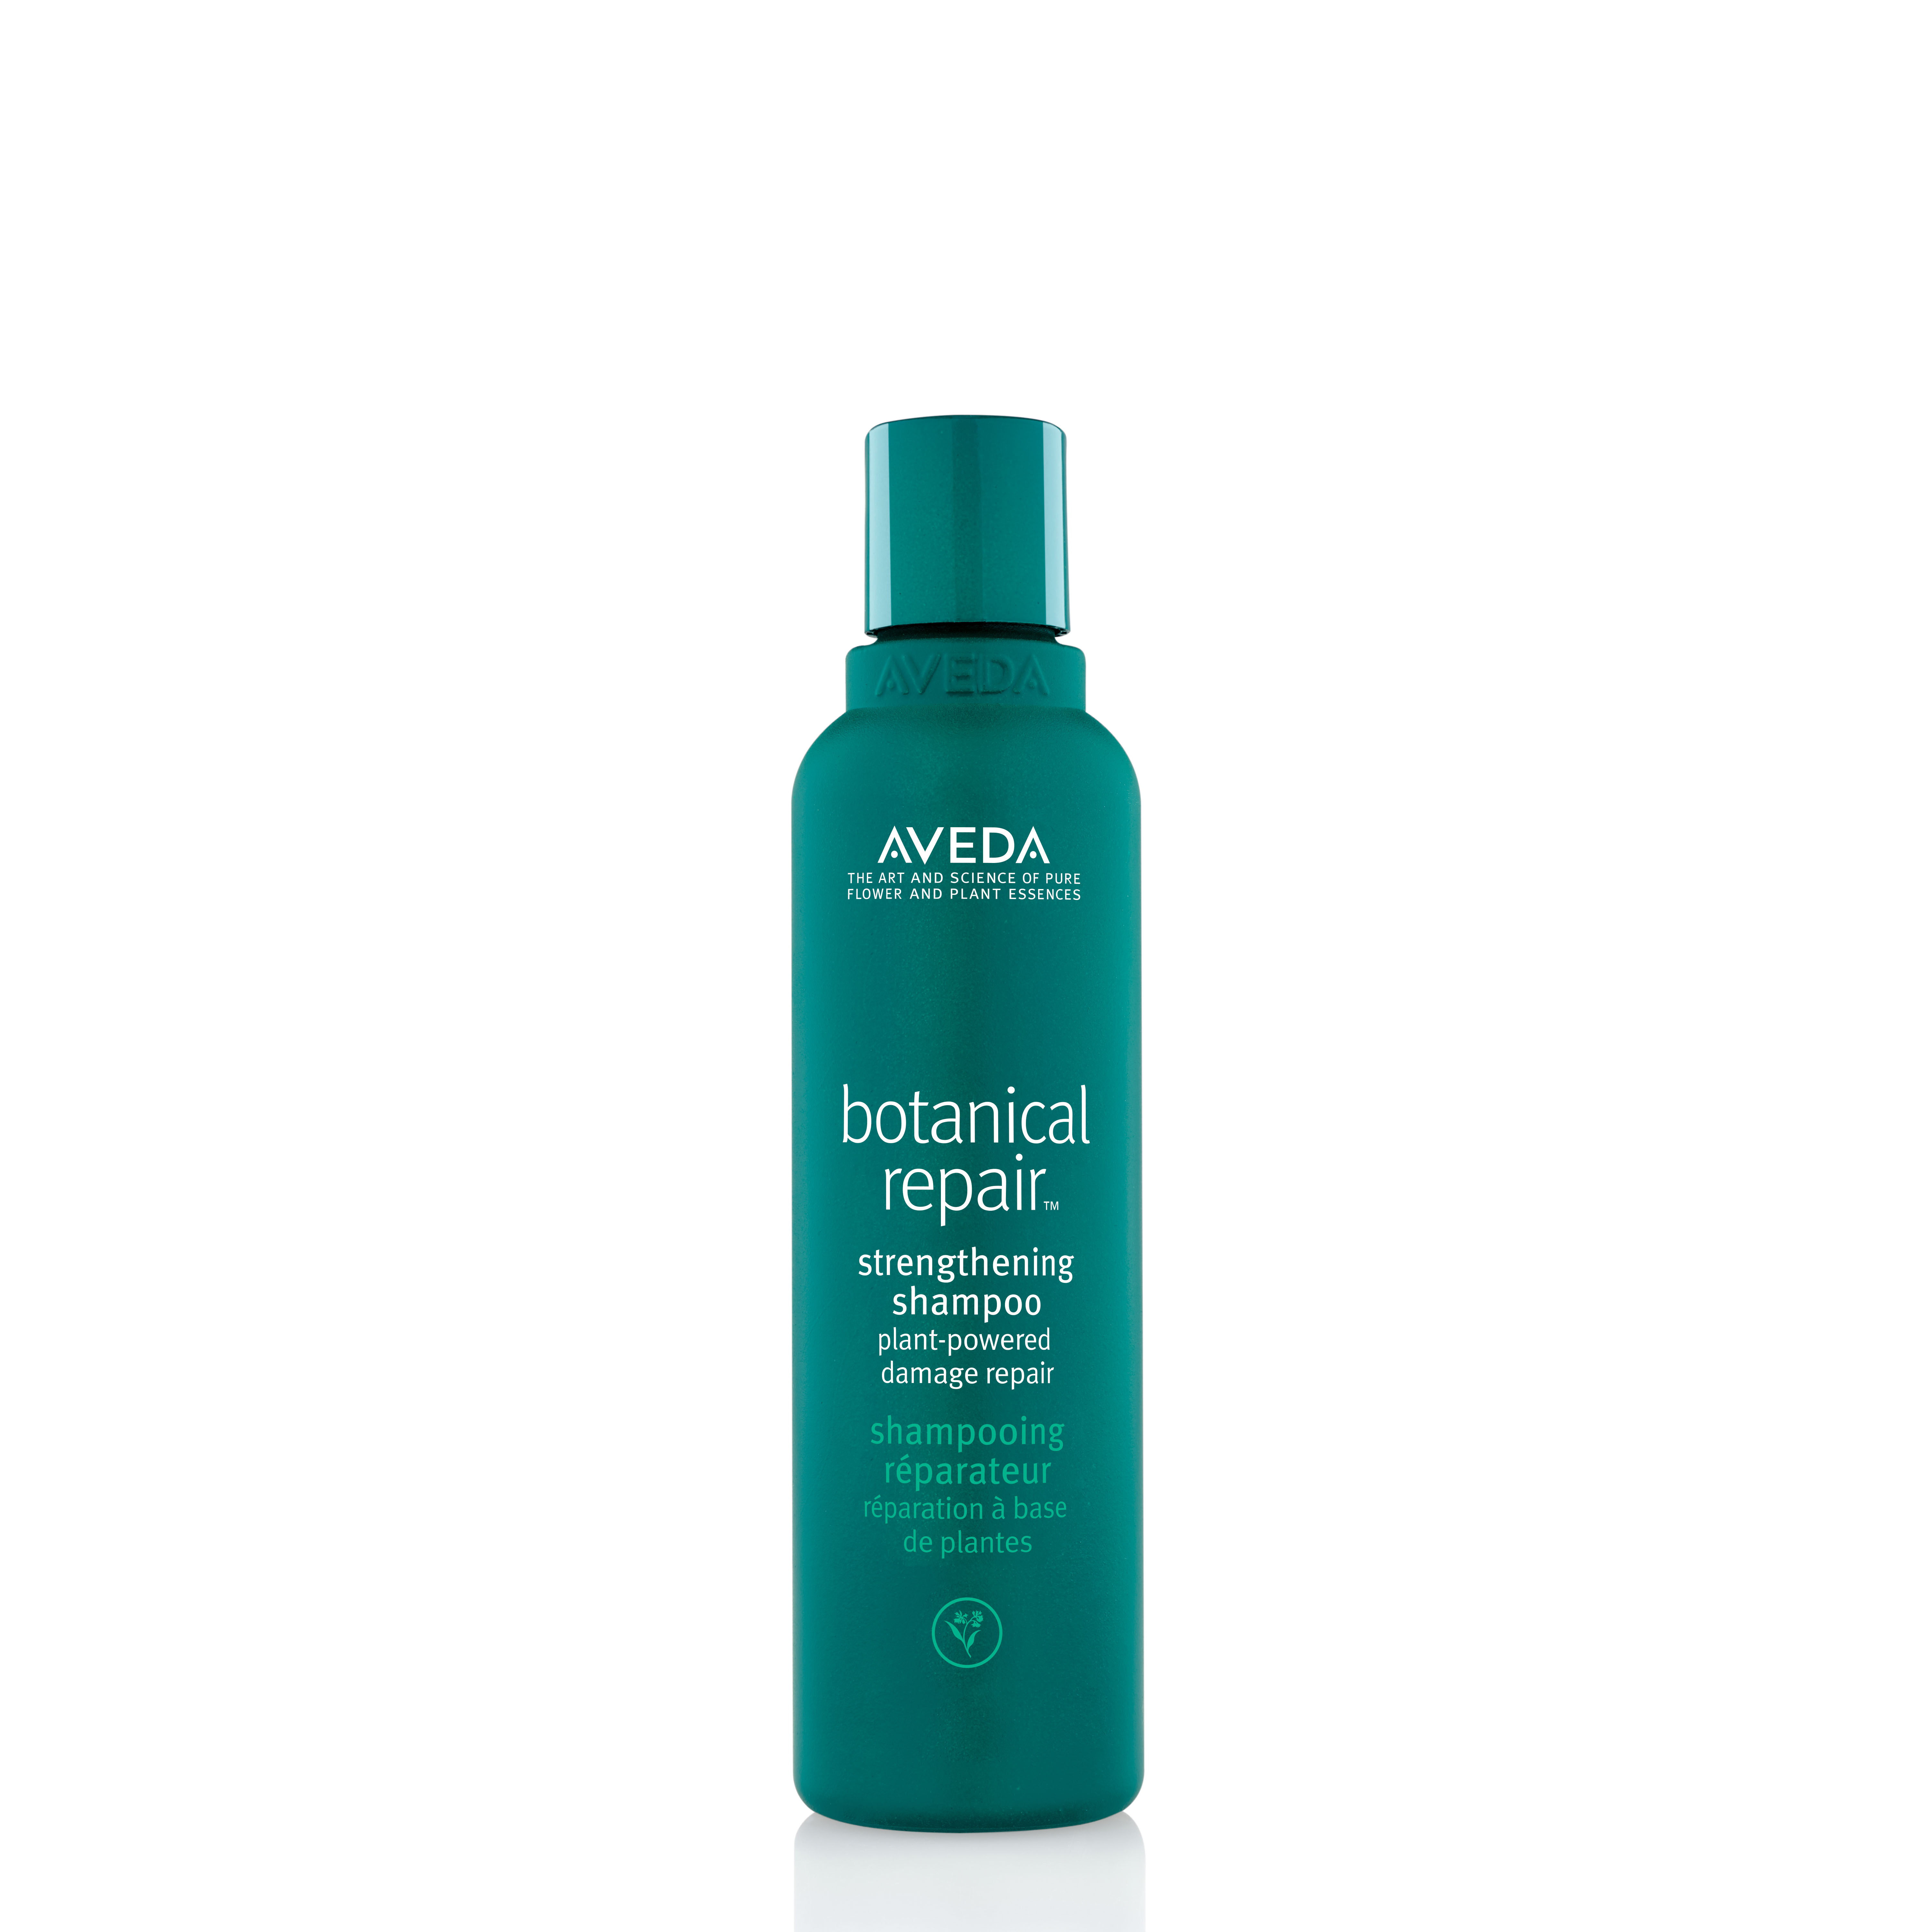 https://av-dashop.nl/wp-content/uploads/2020/09/Aveda-botanical-repair-strengthening-shampoo-200ml.jpg